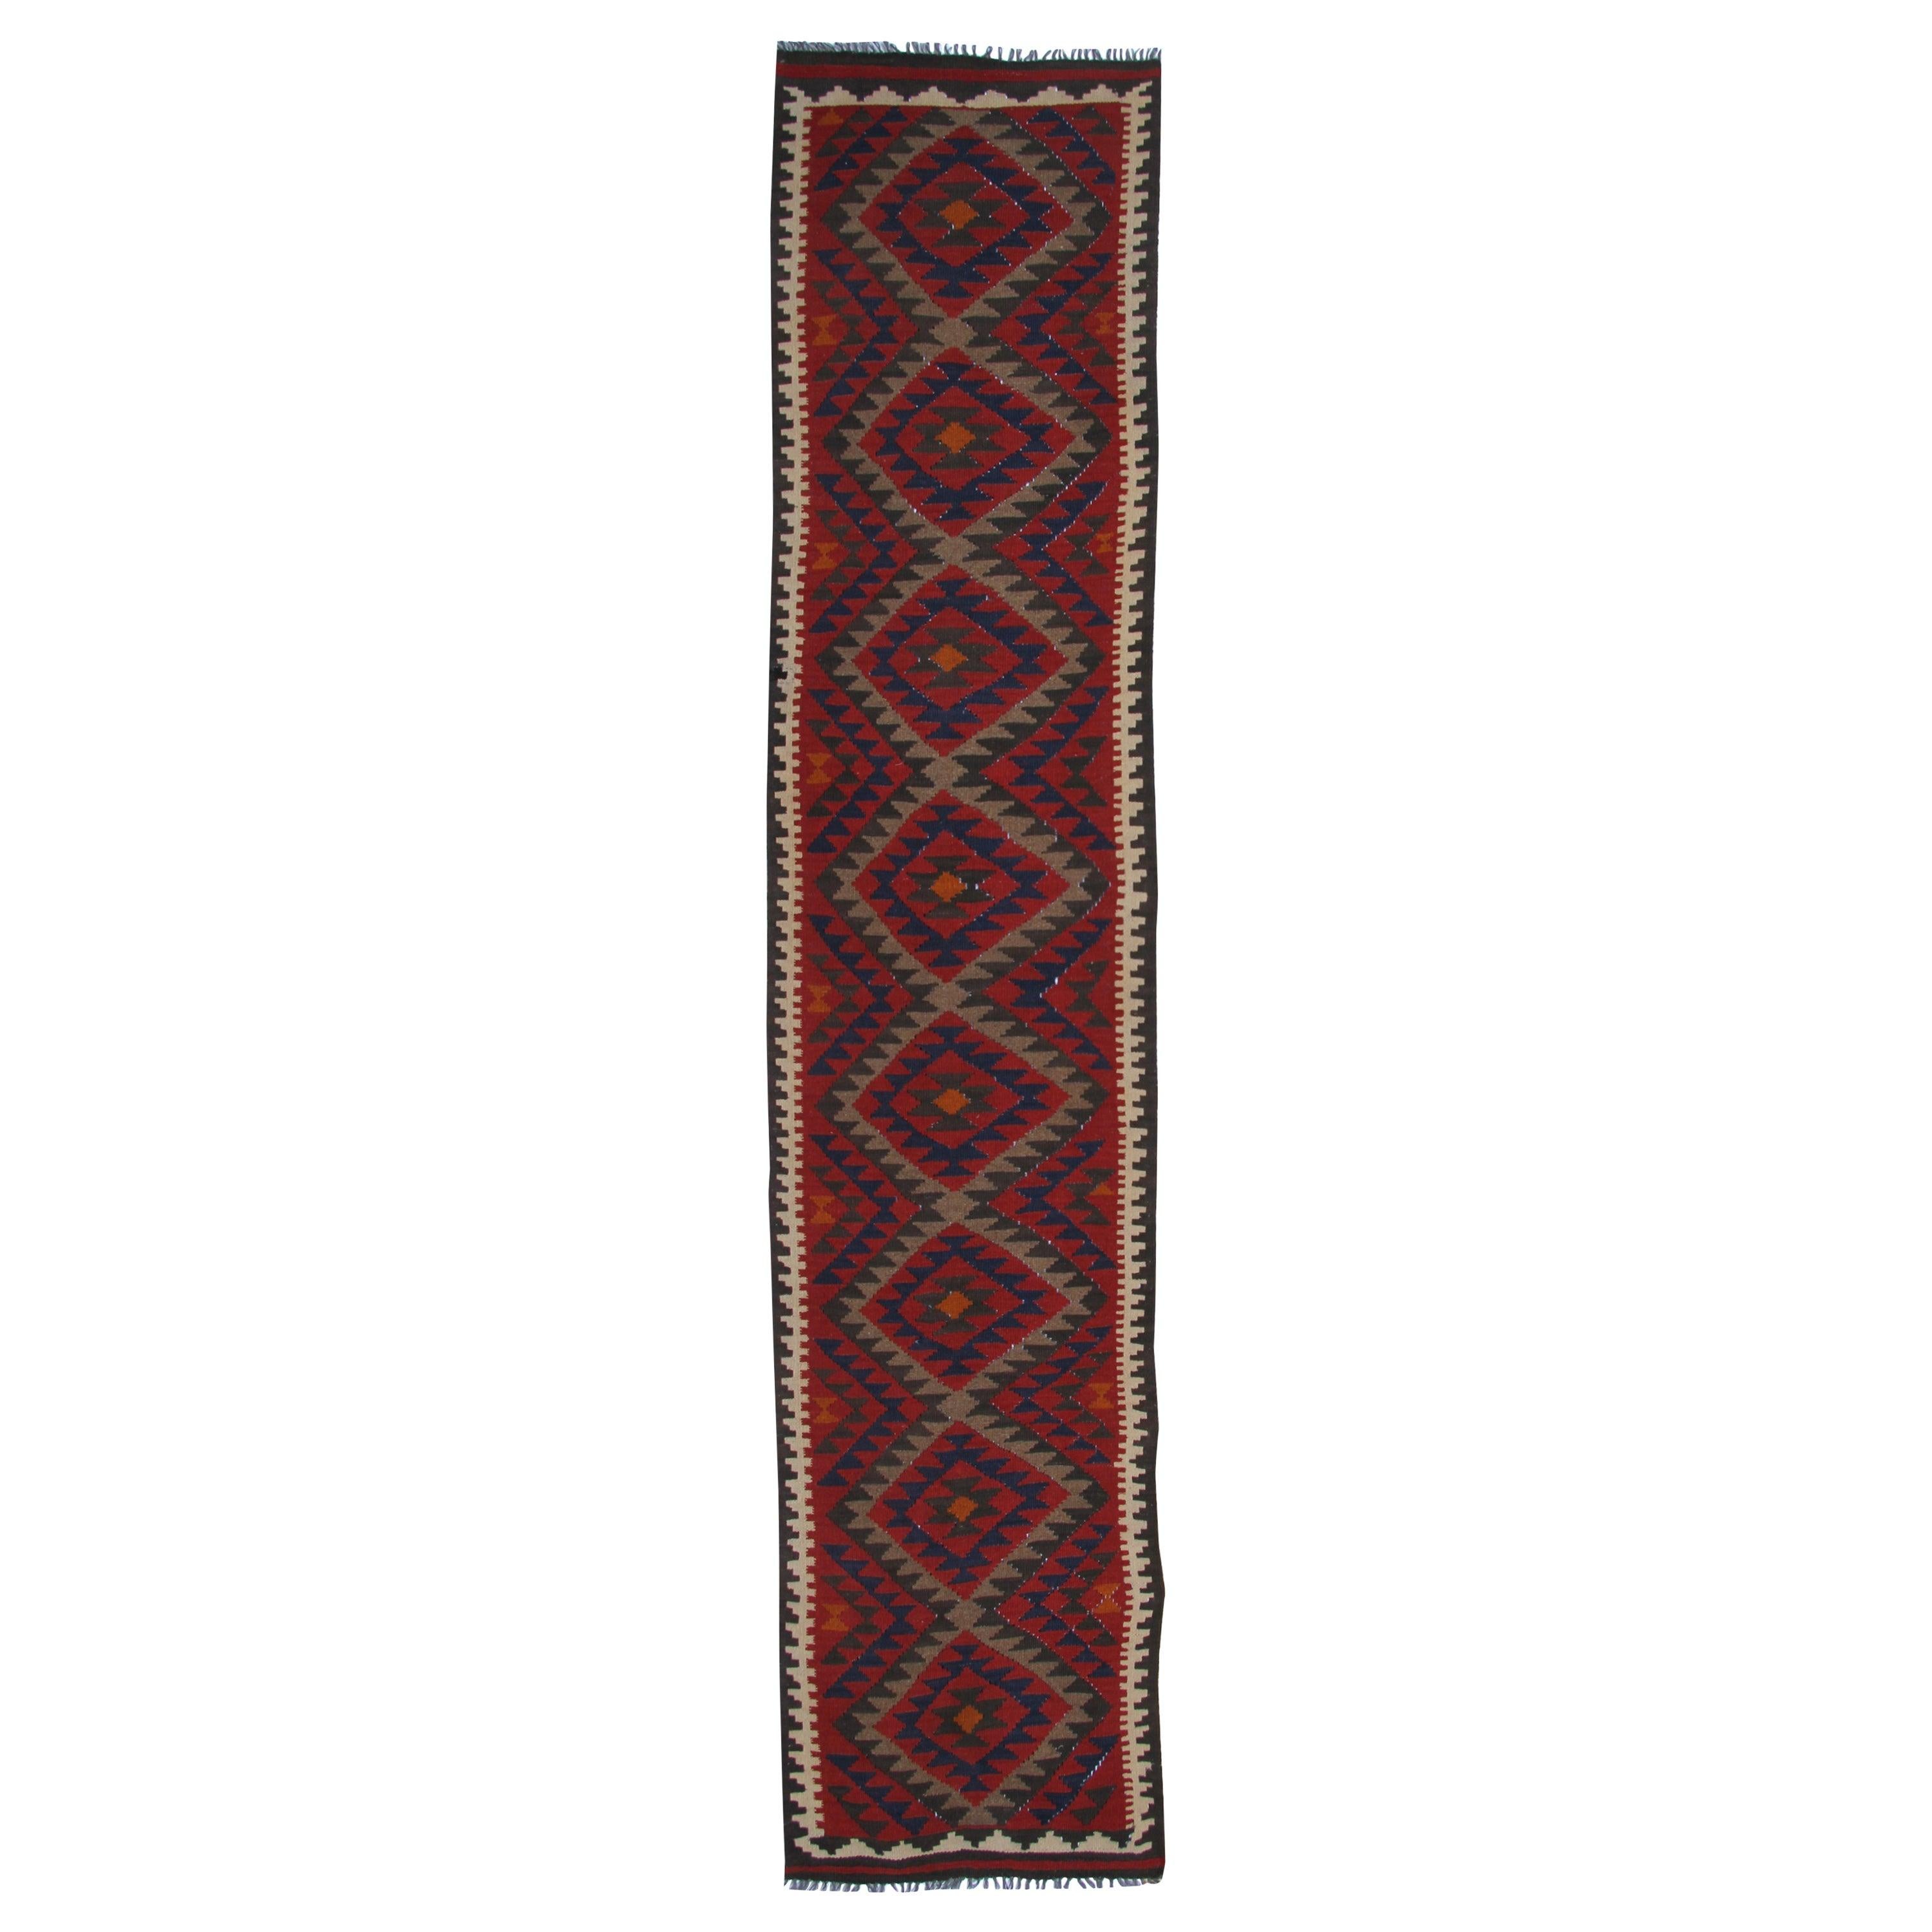 Vintage Kilims Runner Rug Geometric Handwoven Carpet Wool Kilim Rugs